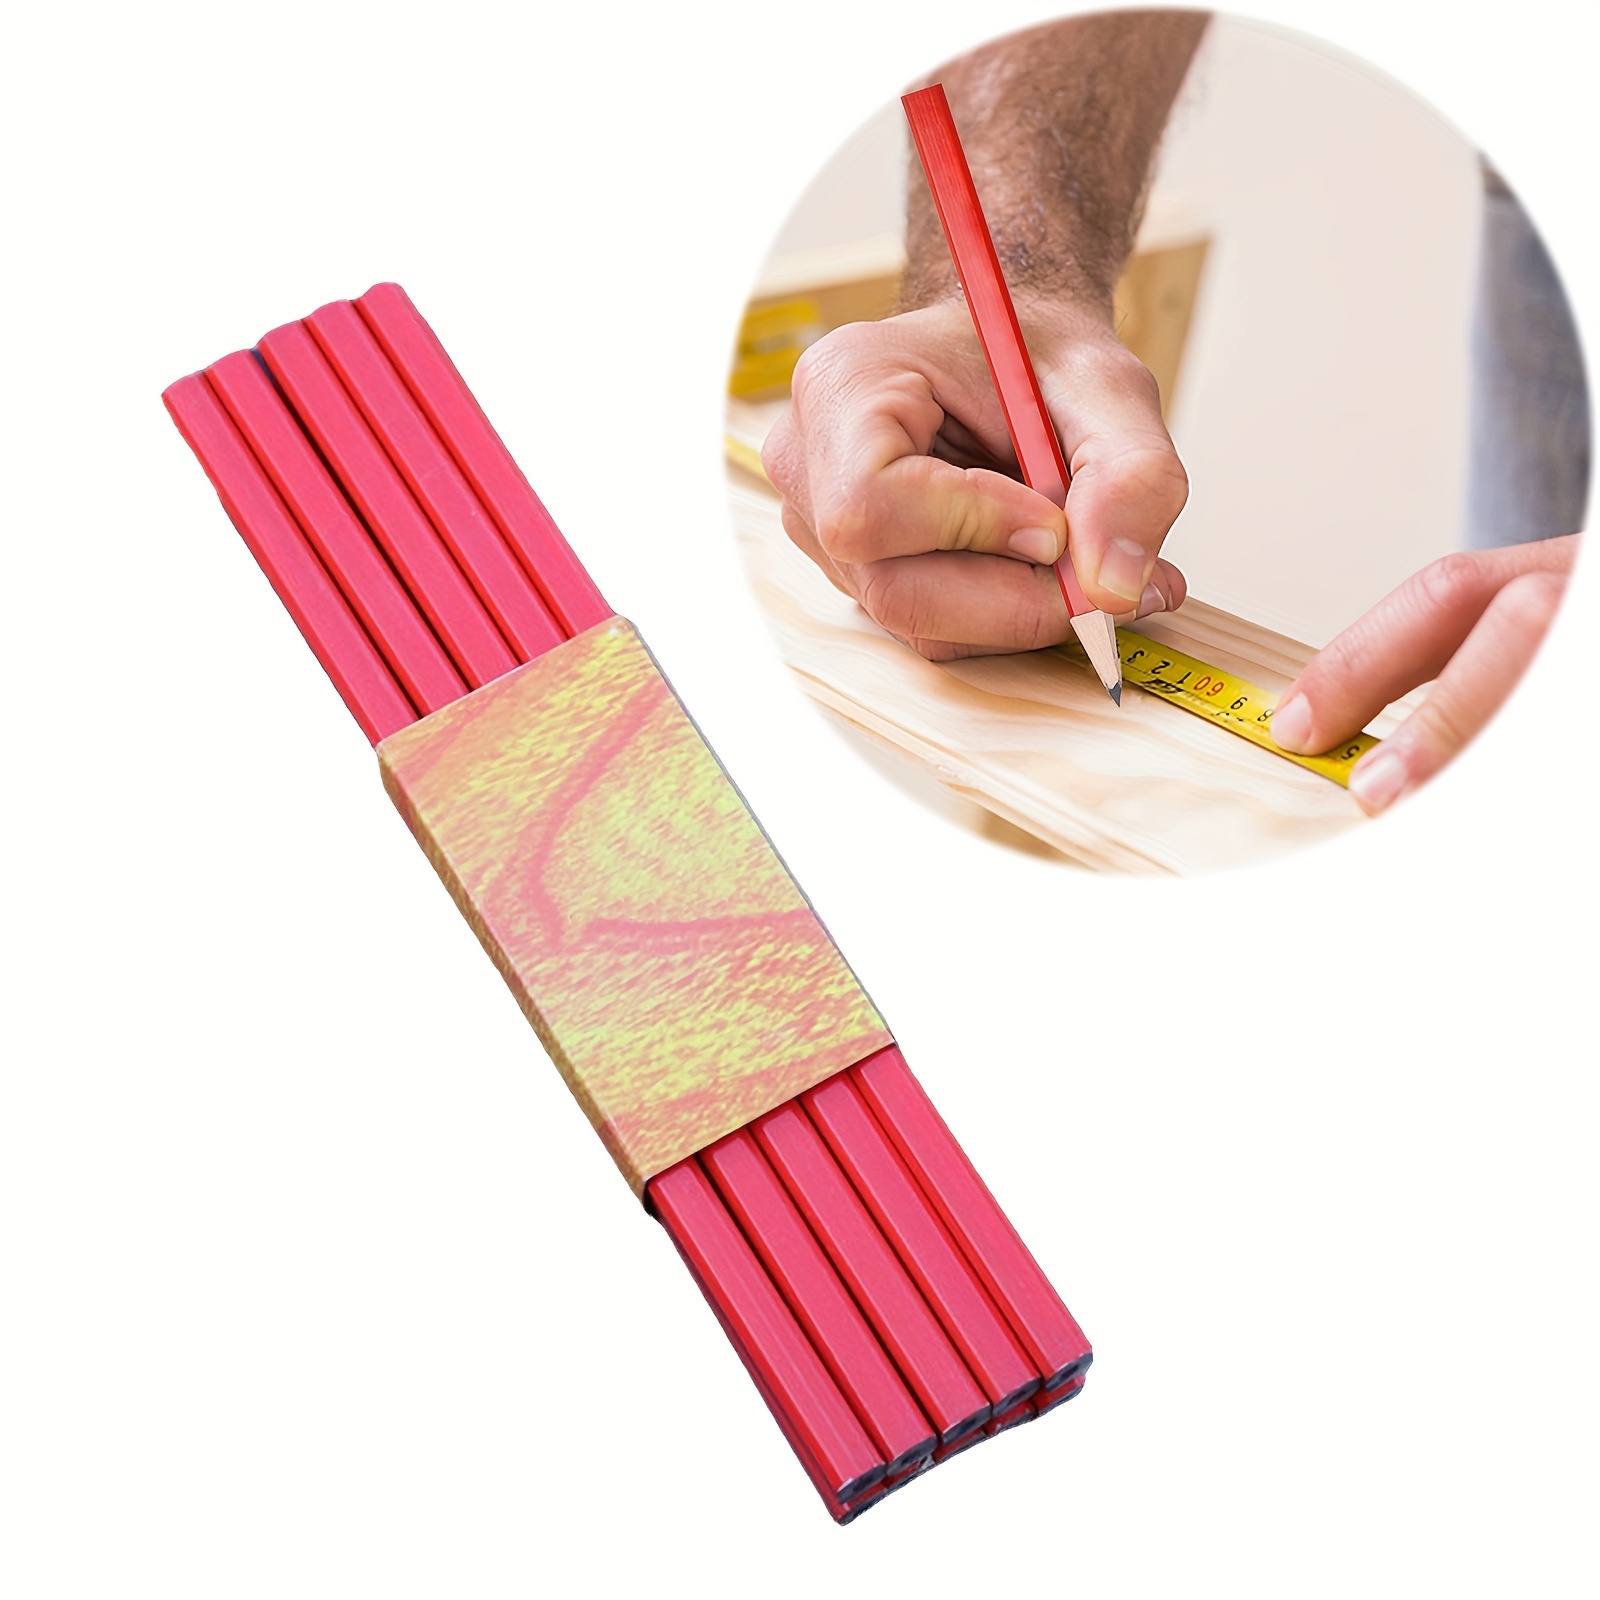 10pcs Woodworking Pencils, Carpenter Marking Black Pencil, Drawing Pencil